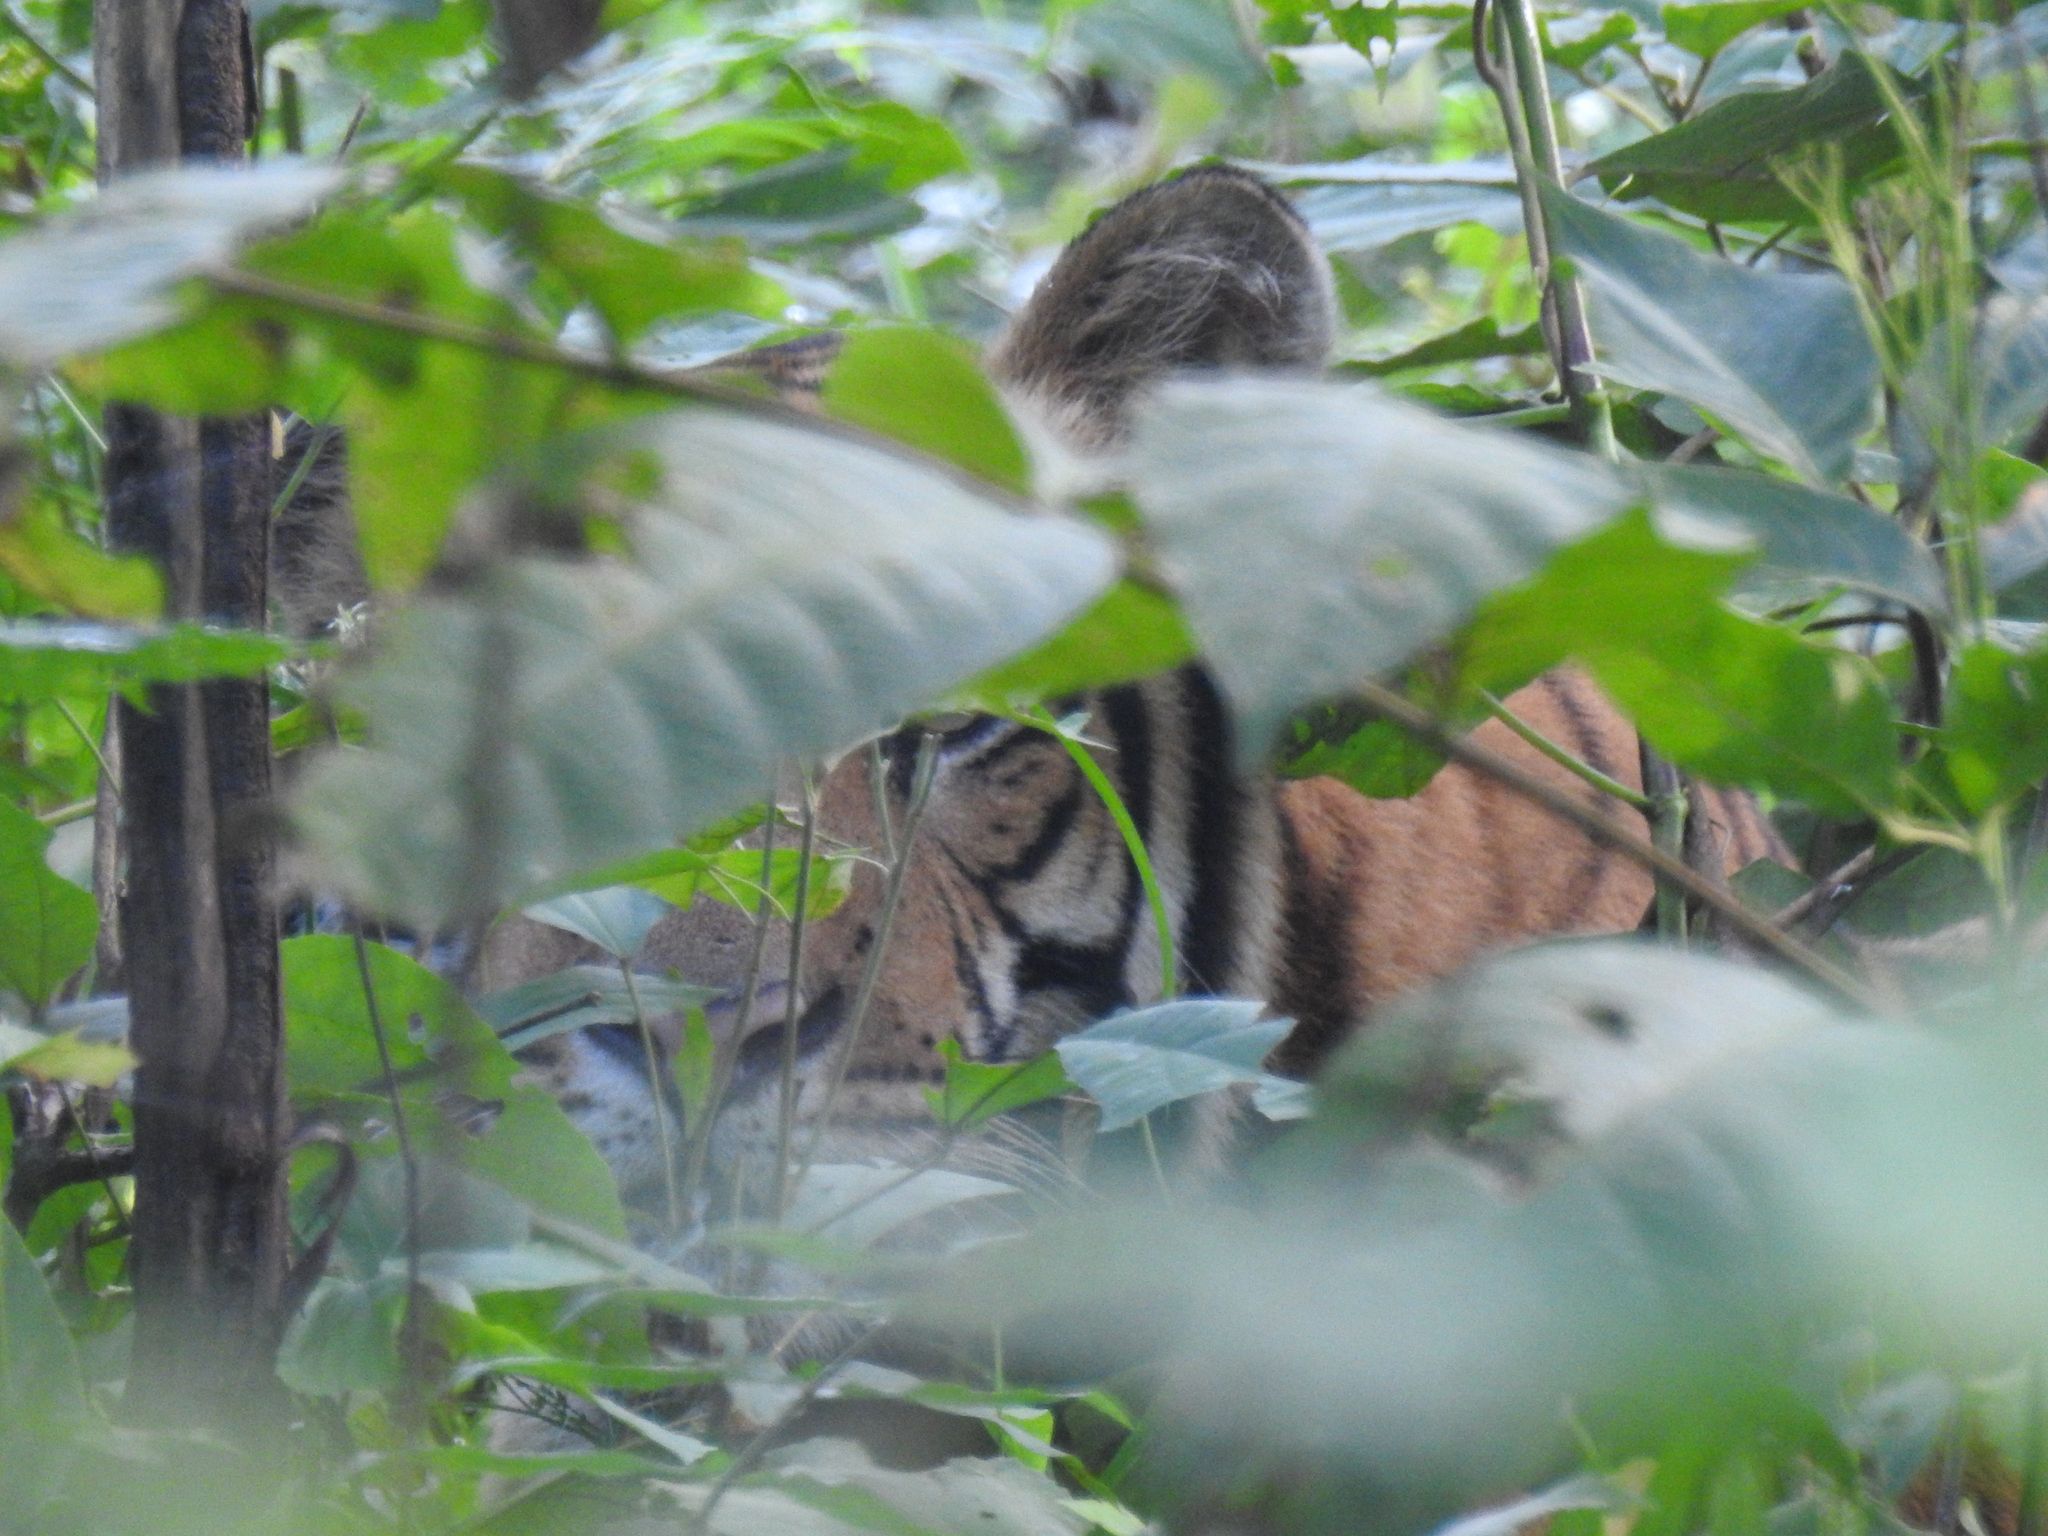 २५ मिलियन डलर लिएर बाघ सिकार गर्न दिने वनमन्त्रीको भनाइमाथि बहस, वेदबहादुर खड्काको लेख